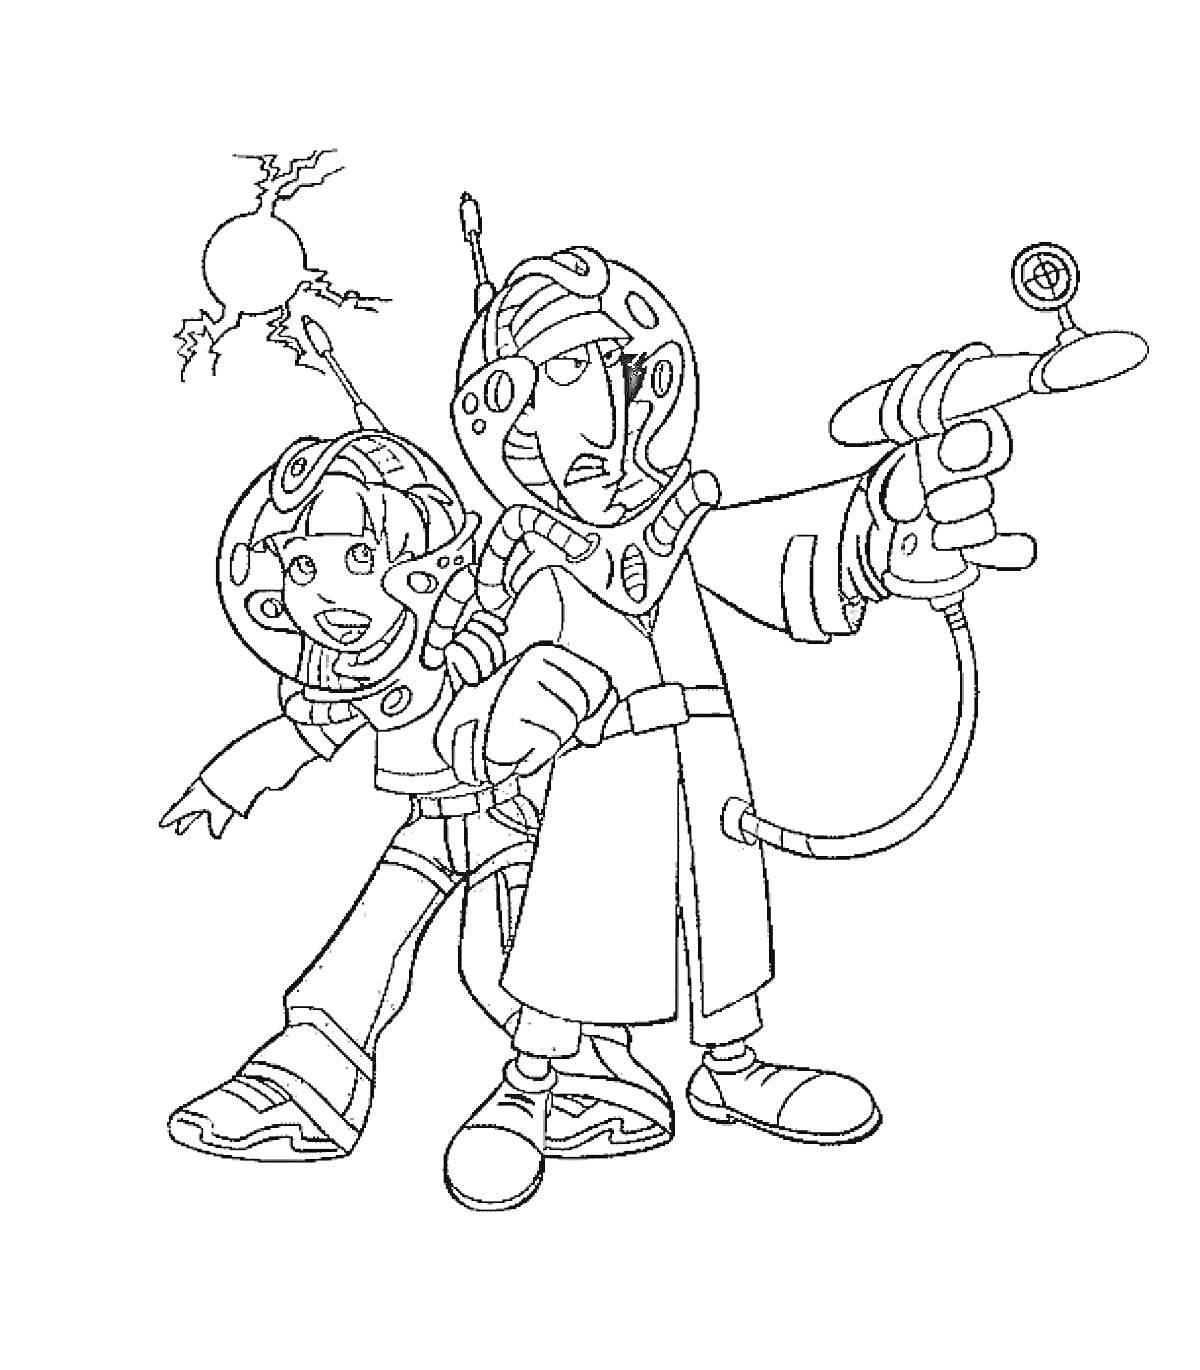 Инспектор Гаджет и девочка в космической экипировке, с оружием и антеннами на шлемах на фоне взрыва